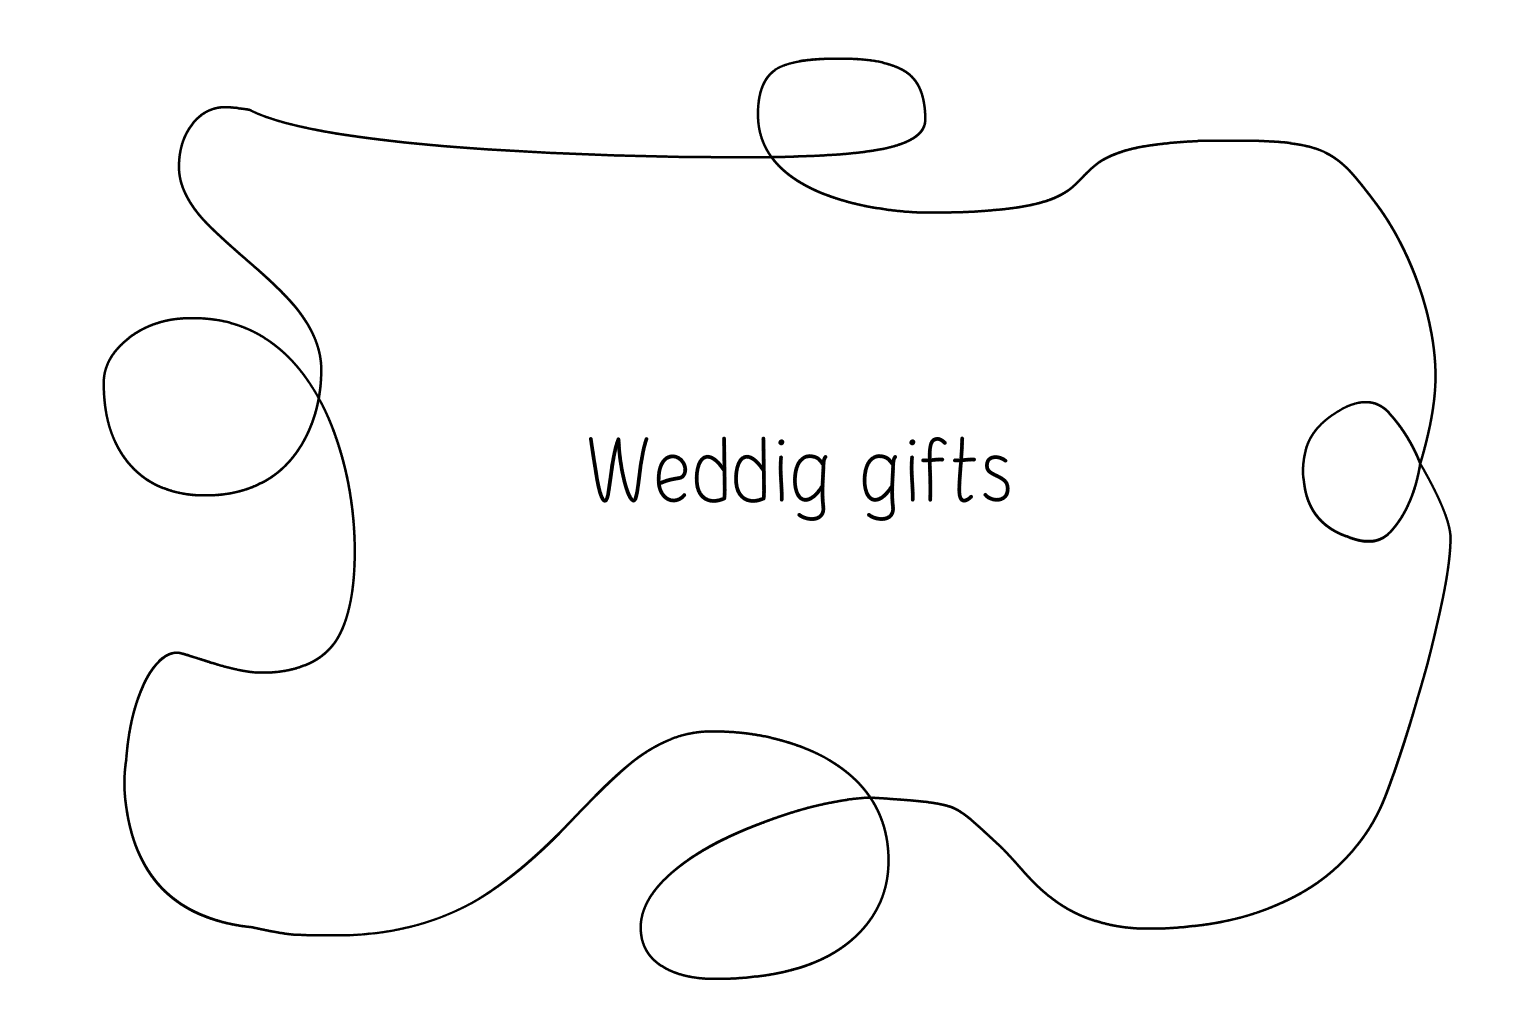 Ilustración de favores y regalos de boda